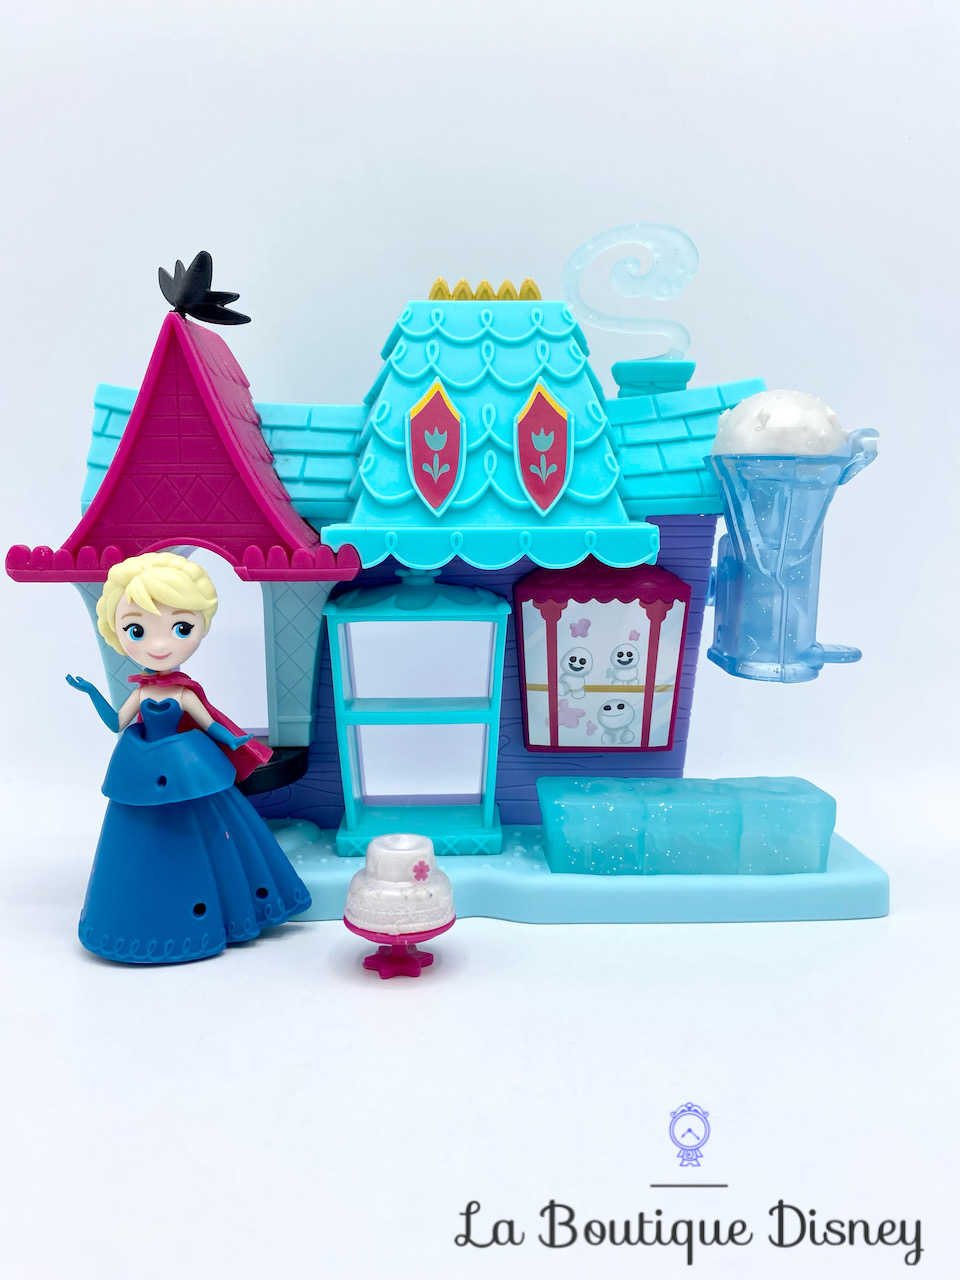 jouet-figurine-little-kingdom-glacier-arendelle-elsa-la-reine-des-neiges-disney-hasbro-polly-clip-frozen-11